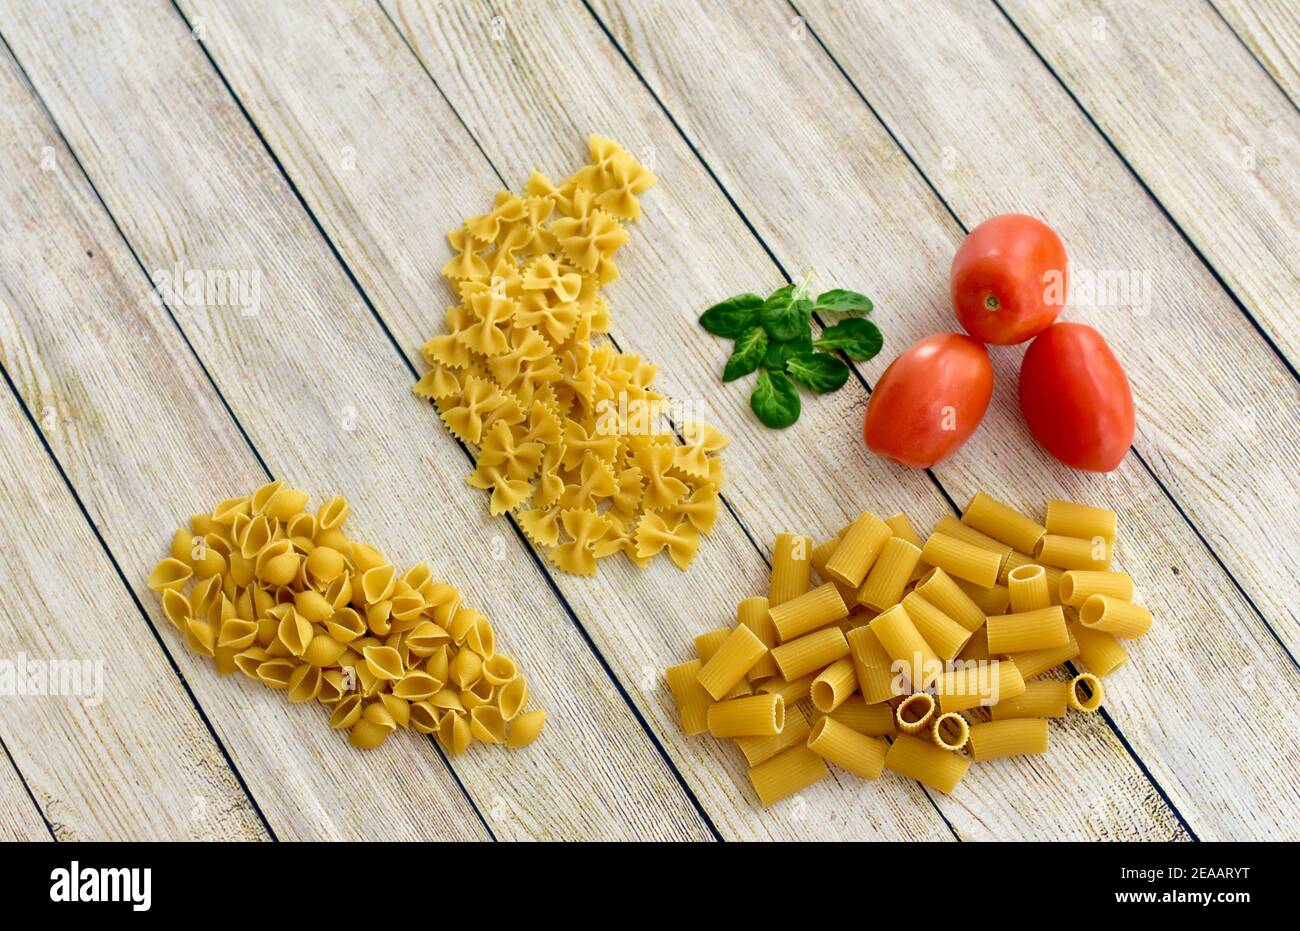 Pasta und Zutaten Fotokonzept, Tischansicht, frische Zutaten für einfache italienische Rezepte und gesundes Essen zu Hause Stockfoto